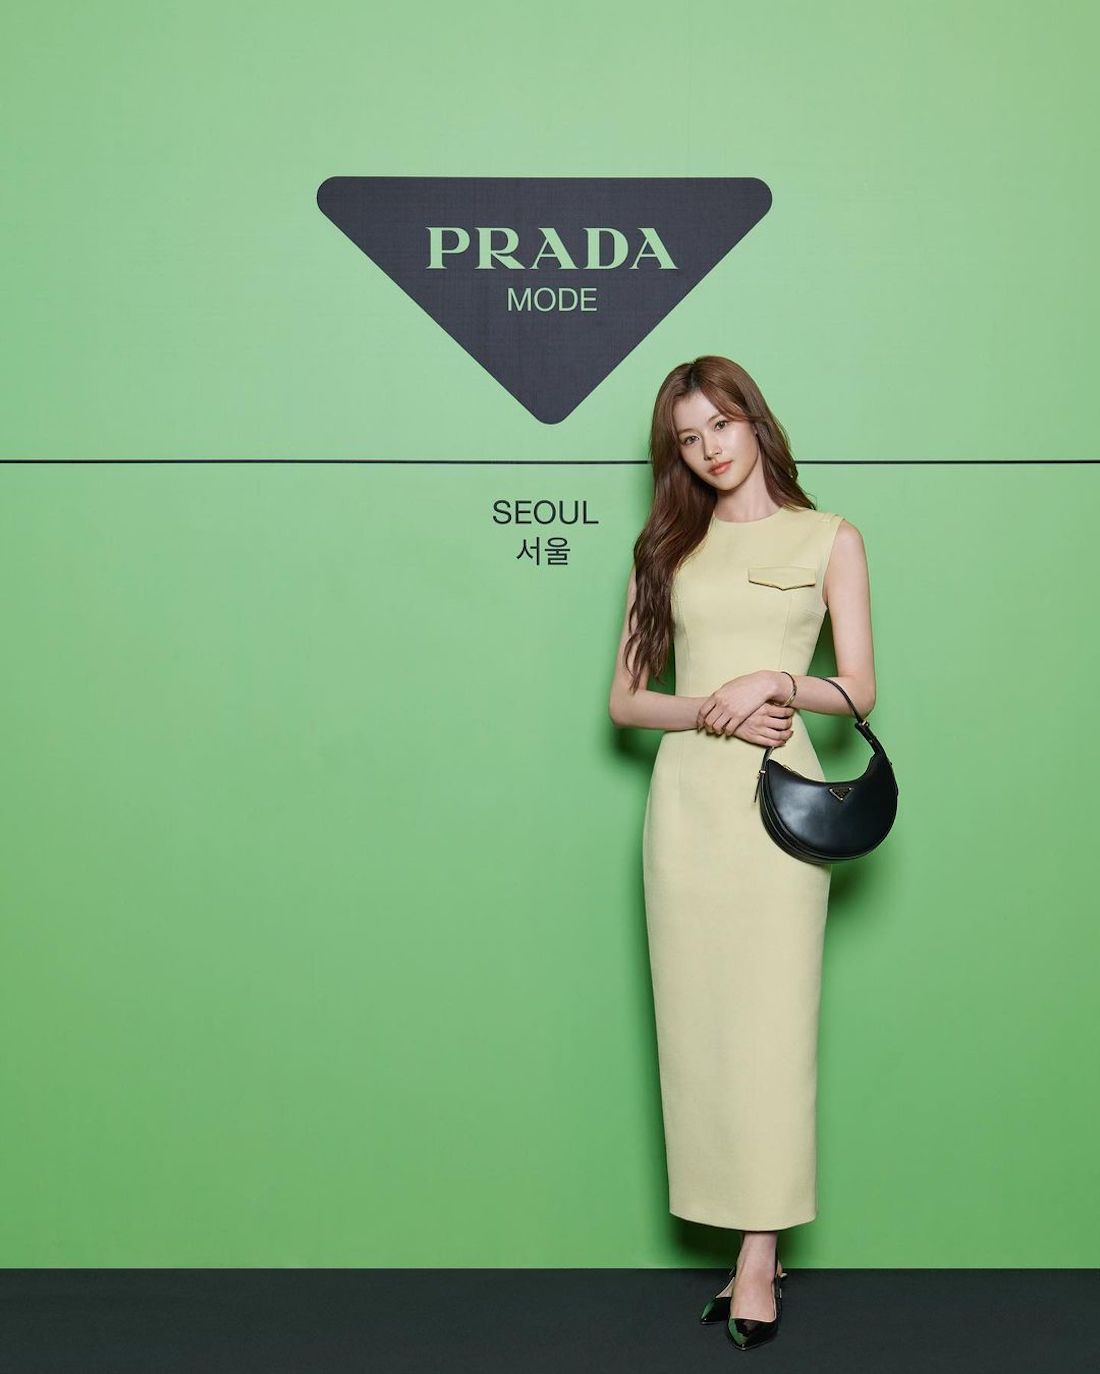 TWICE（トゥワイス）のSANA（サナ）が、高級ファッションブランド「PRADA（プラダ）」のアンバサダー